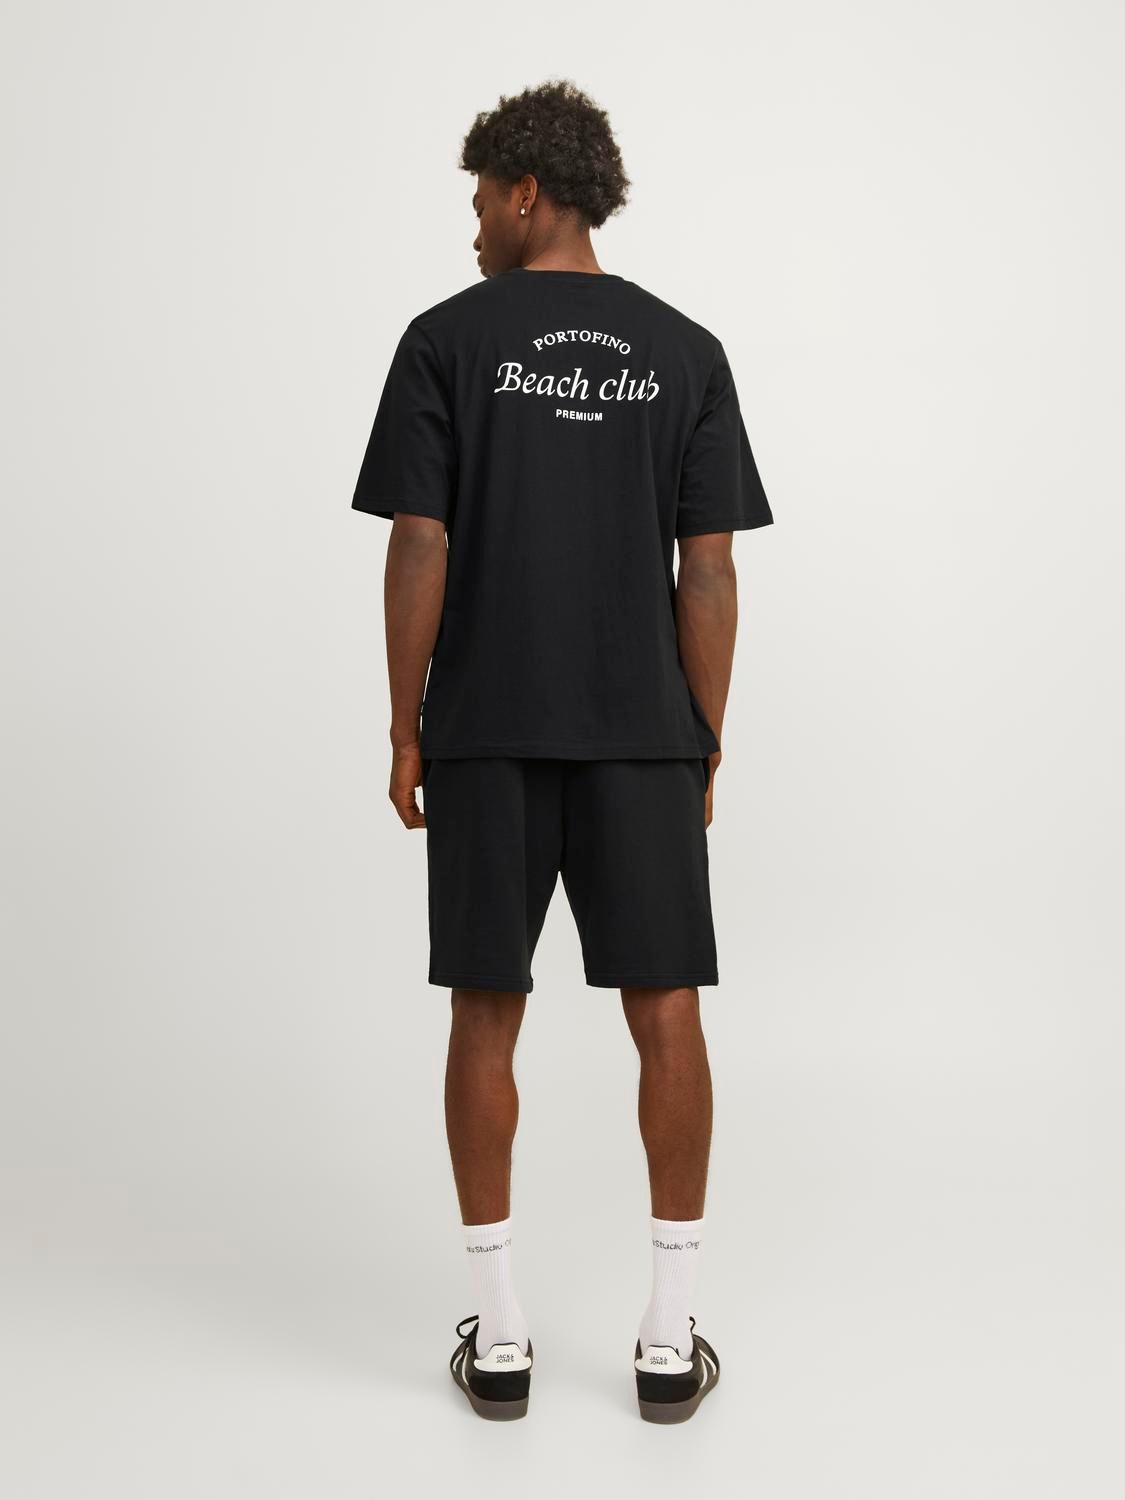 Jack & Jones Gedruckt Rundhals T-shirt -Black Onyx - 12263520